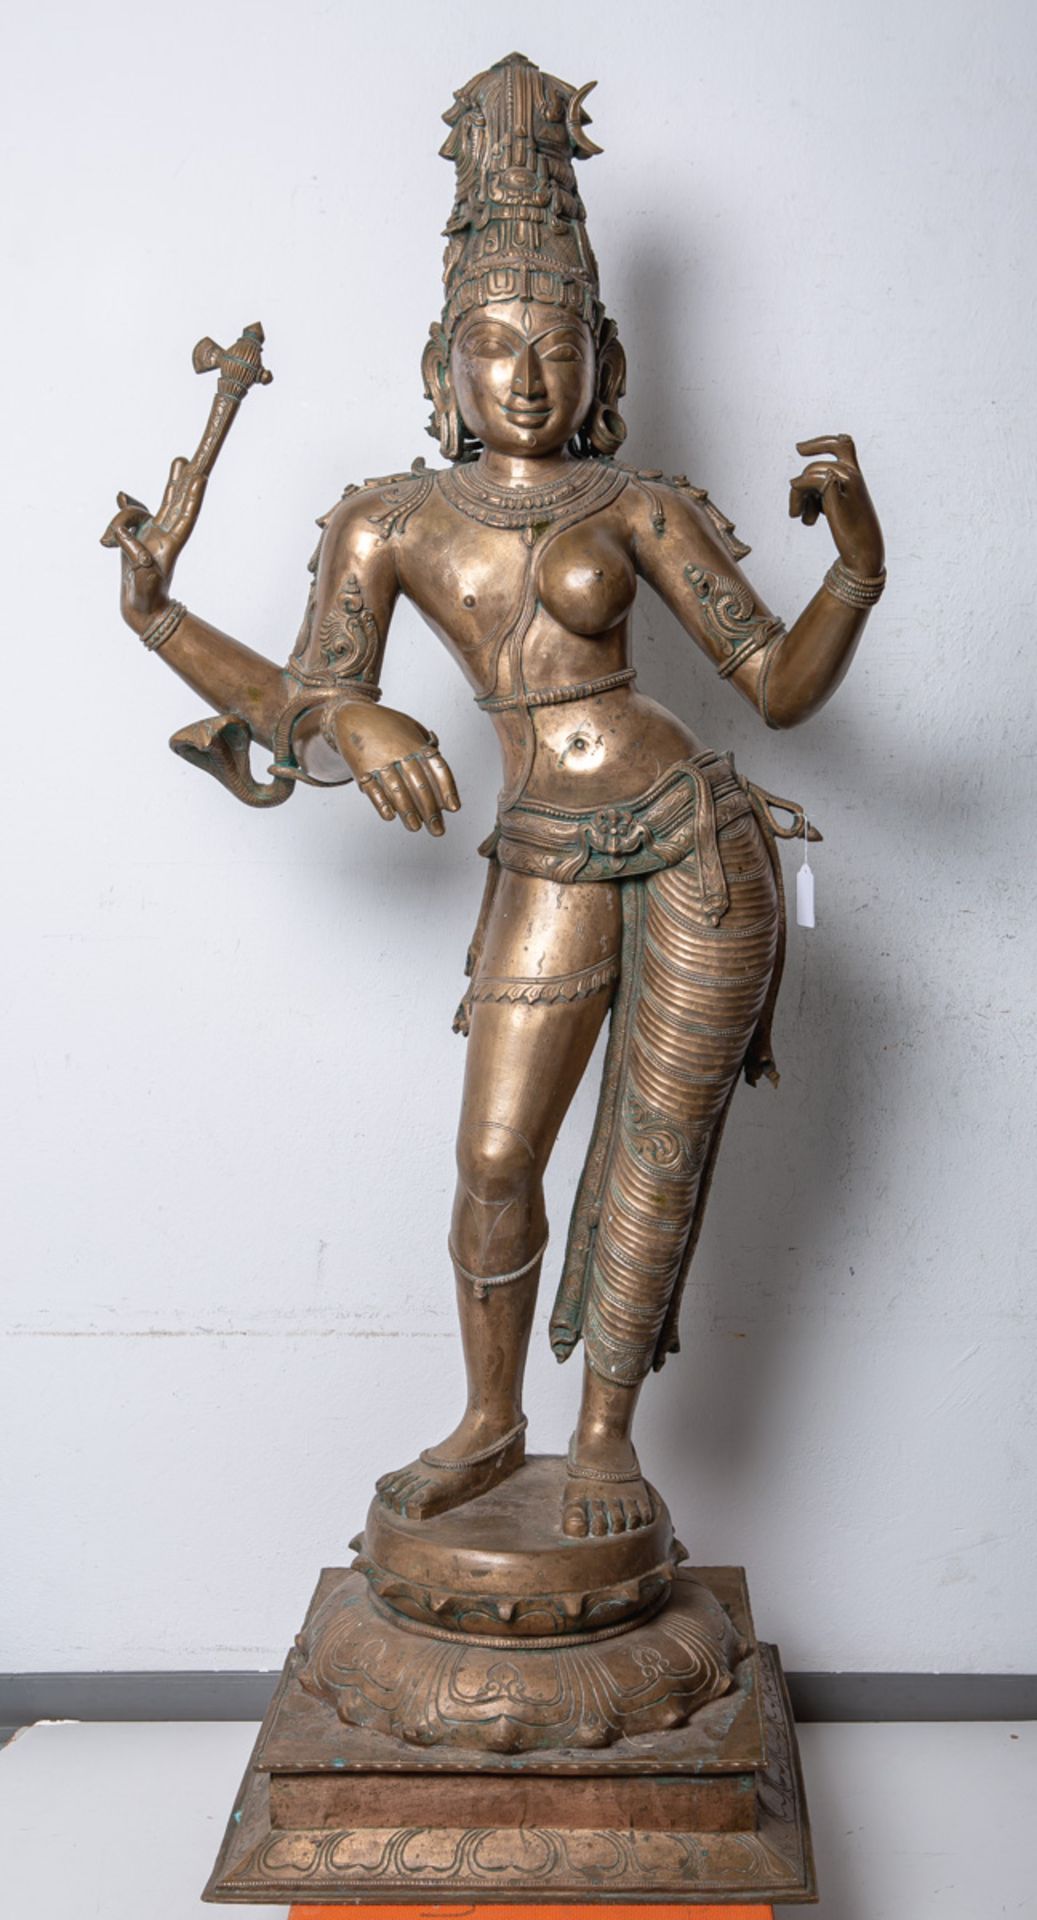 KünstlerIn unbekannt (wohl Indien, 19./20. Jh.) Wohl Shiva